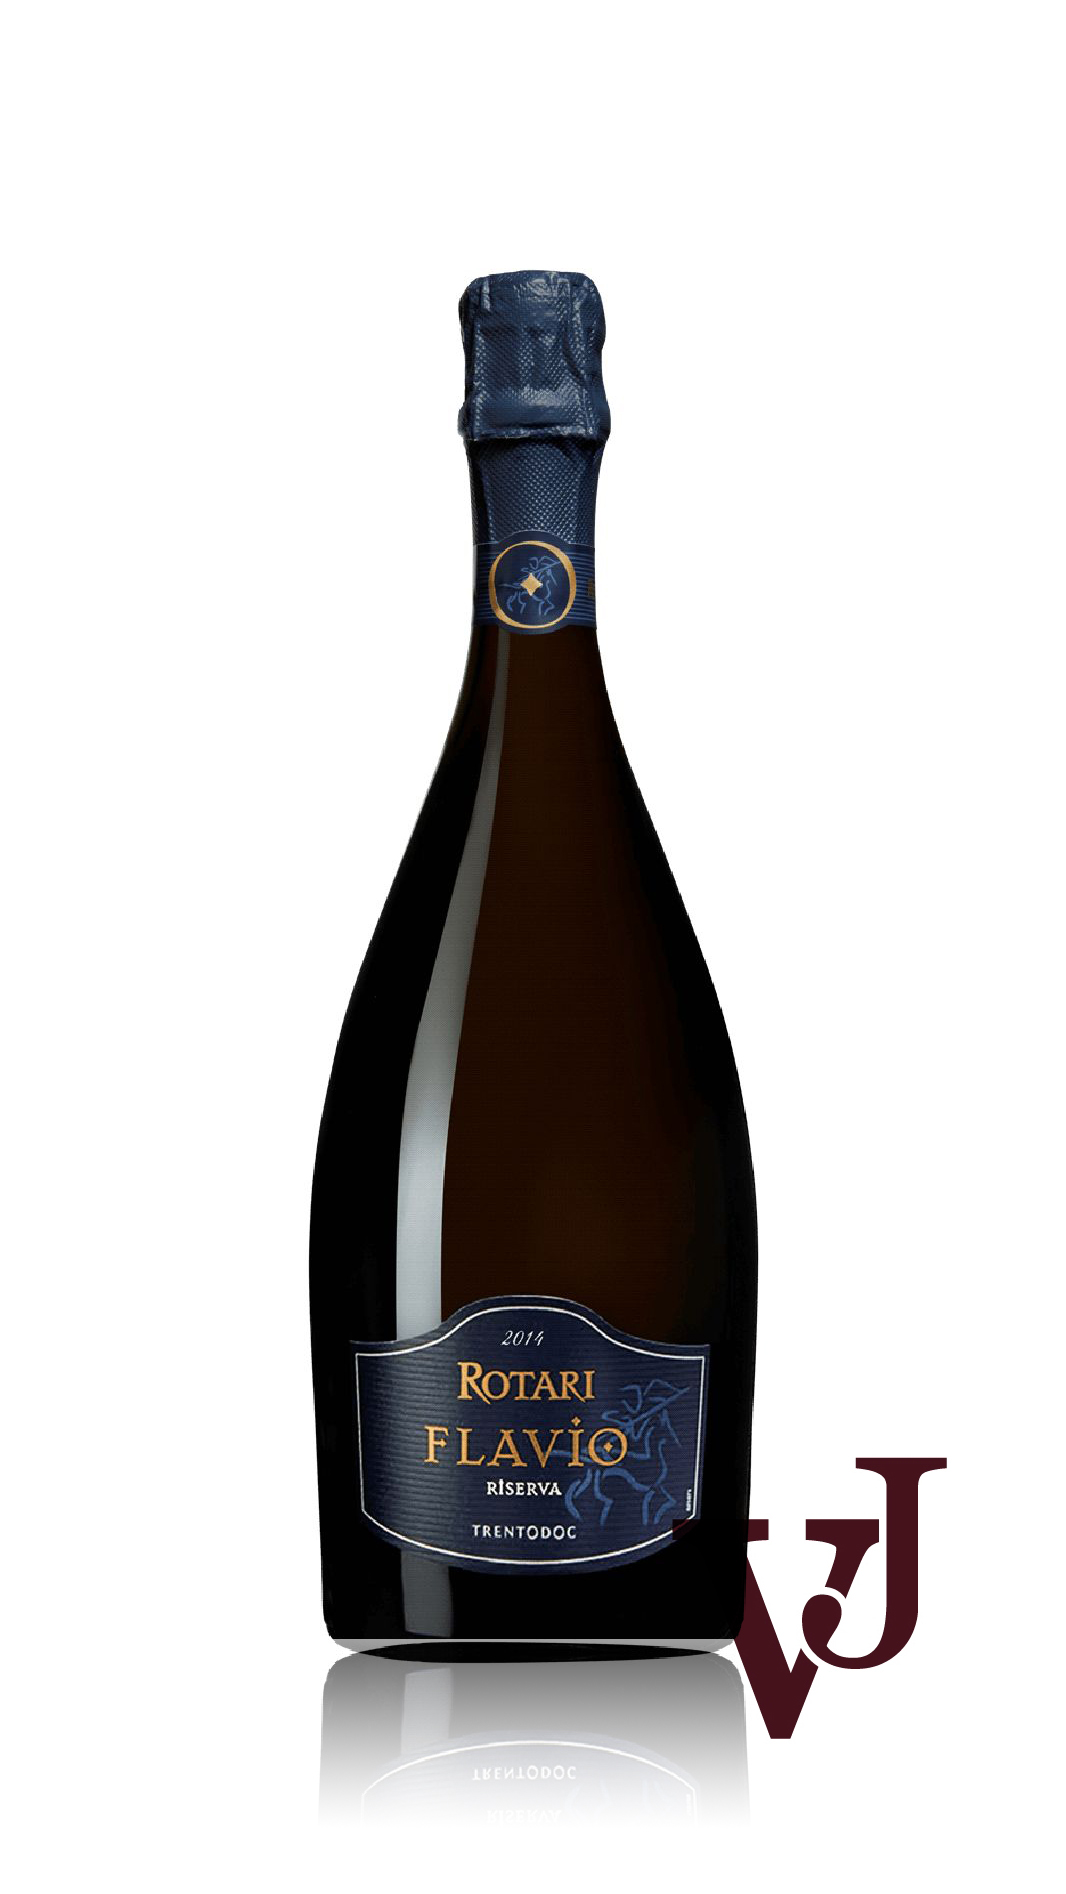 Mousserande Vin - Rotari Flavio Riserva 2014 artikel nummer 9348401 från producenten Mezzacorona från Italien